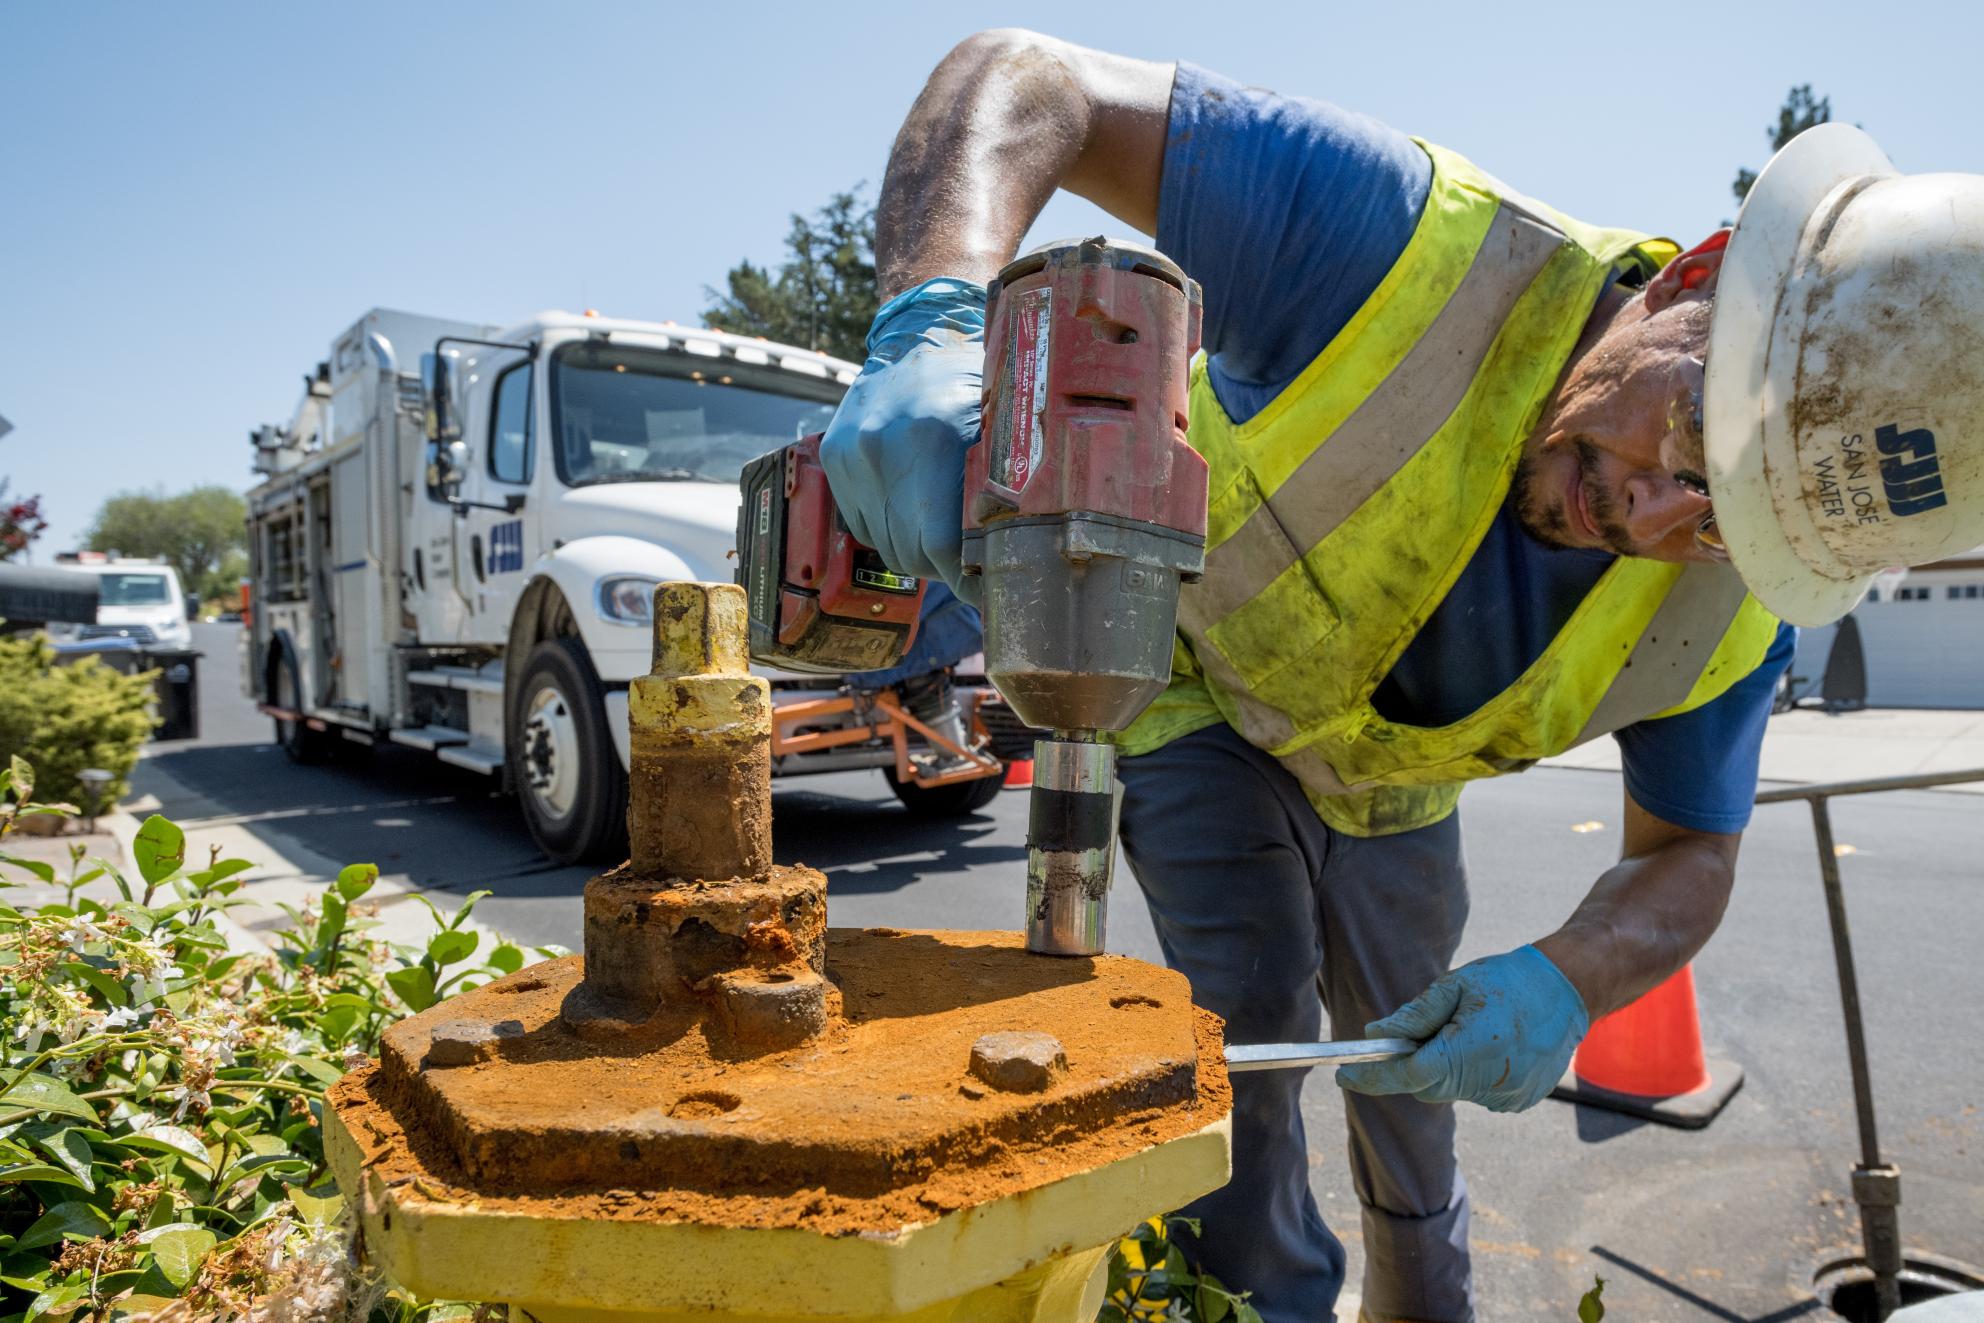 SJW employee fixing fire hydrant